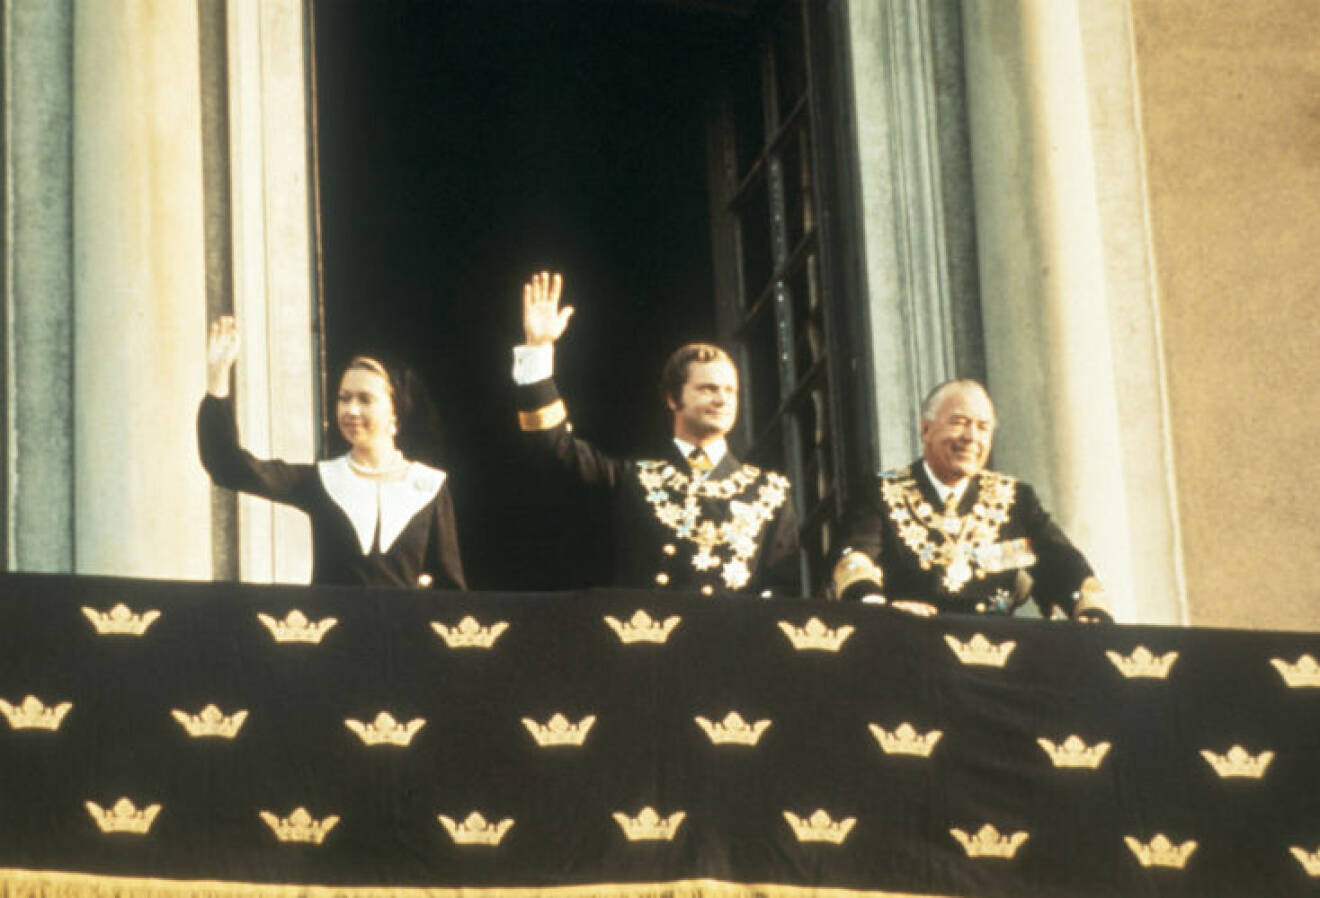 Prinsessan Christina, kungen och prins Bertil efter trontillträdet i september 1973.